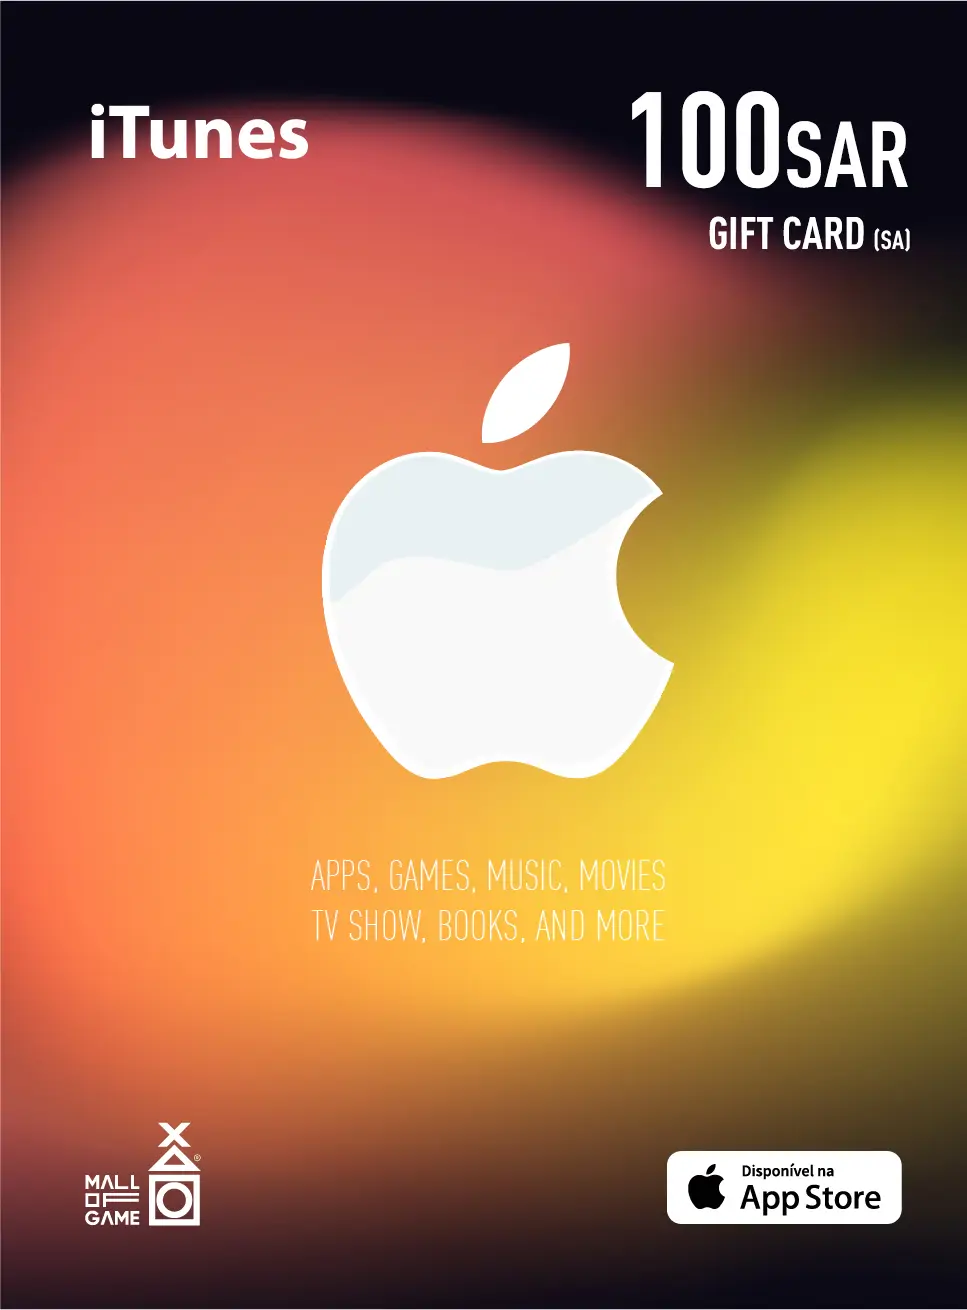 iTunes SAR100 Gift Card (SA)